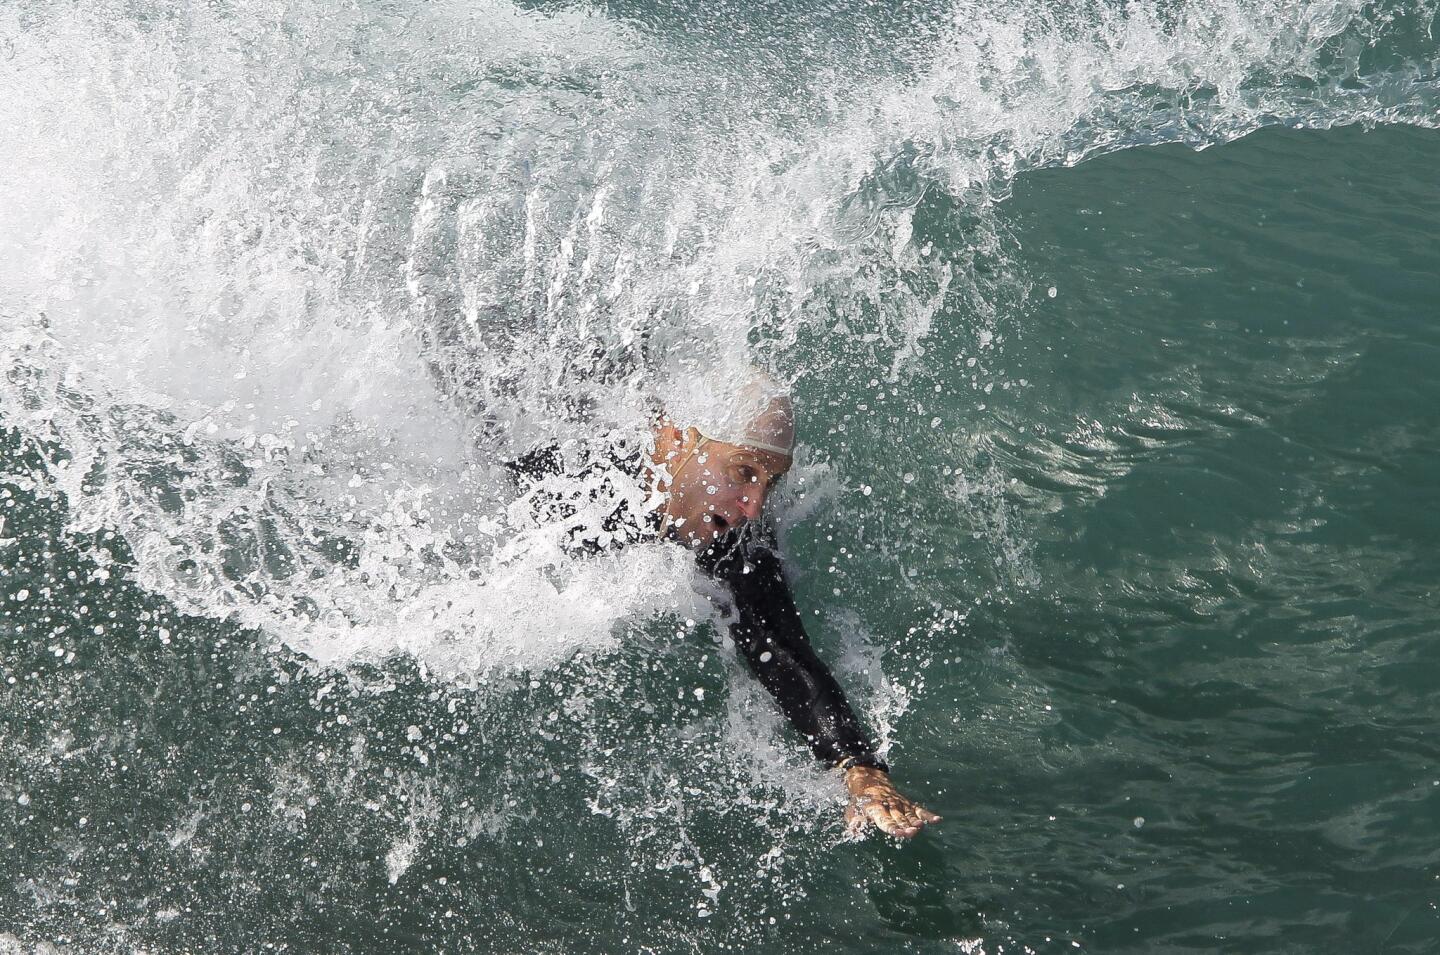 World Bodysurfing Championships 2014